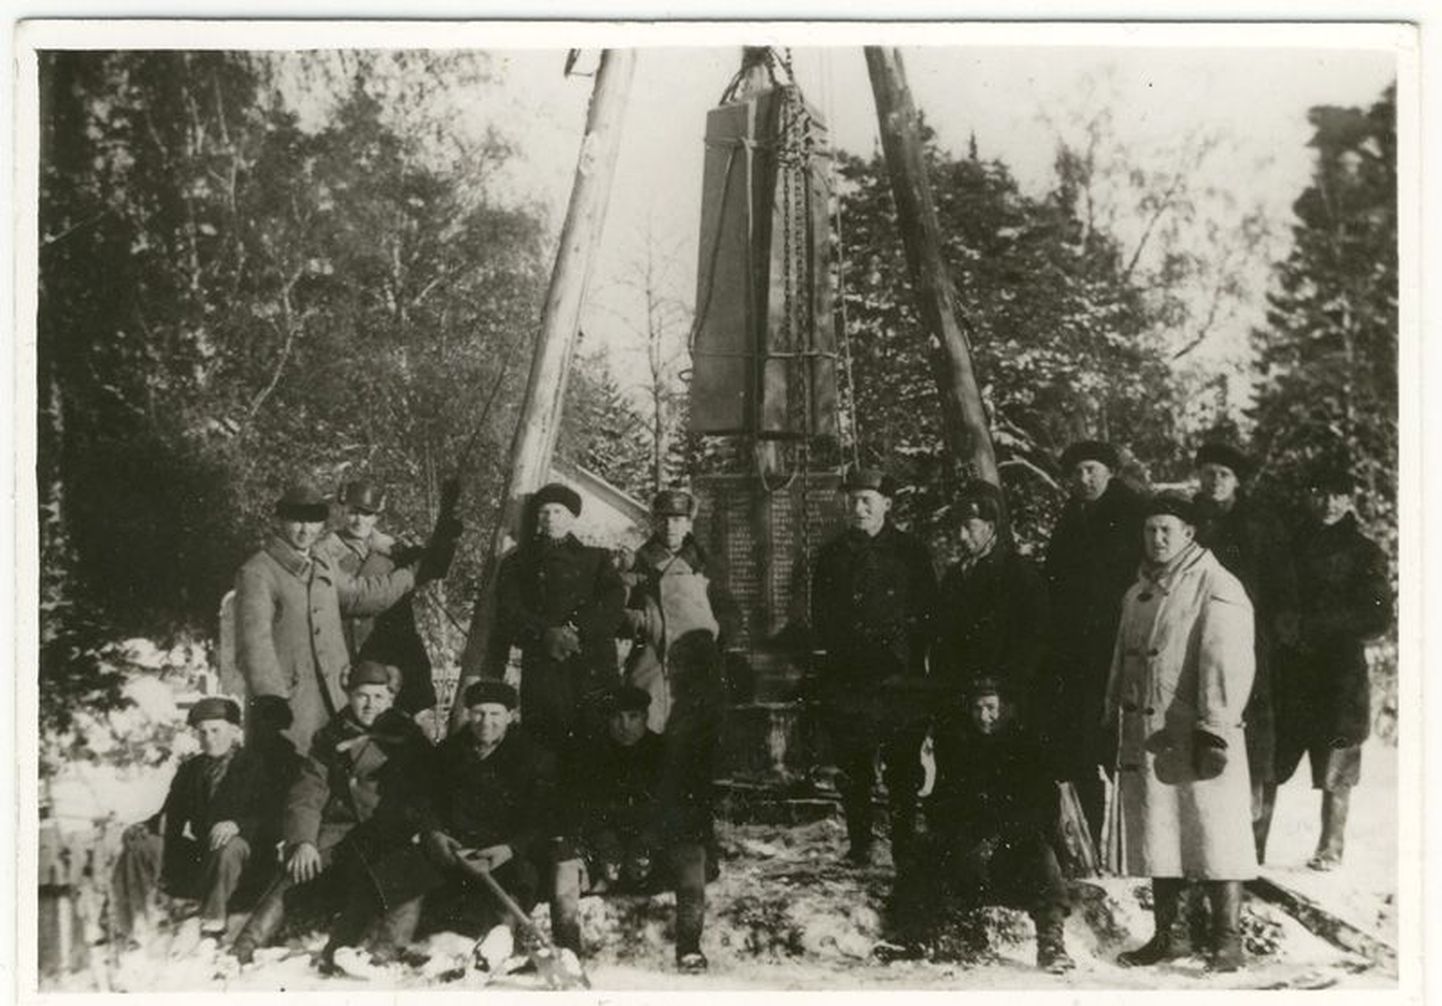 Ajaloolisel pildil on jäädvustatud Viru-Jaagupi vabadussõja mälestussamba tagasi paigaldajad 1941. aasta sügisel.